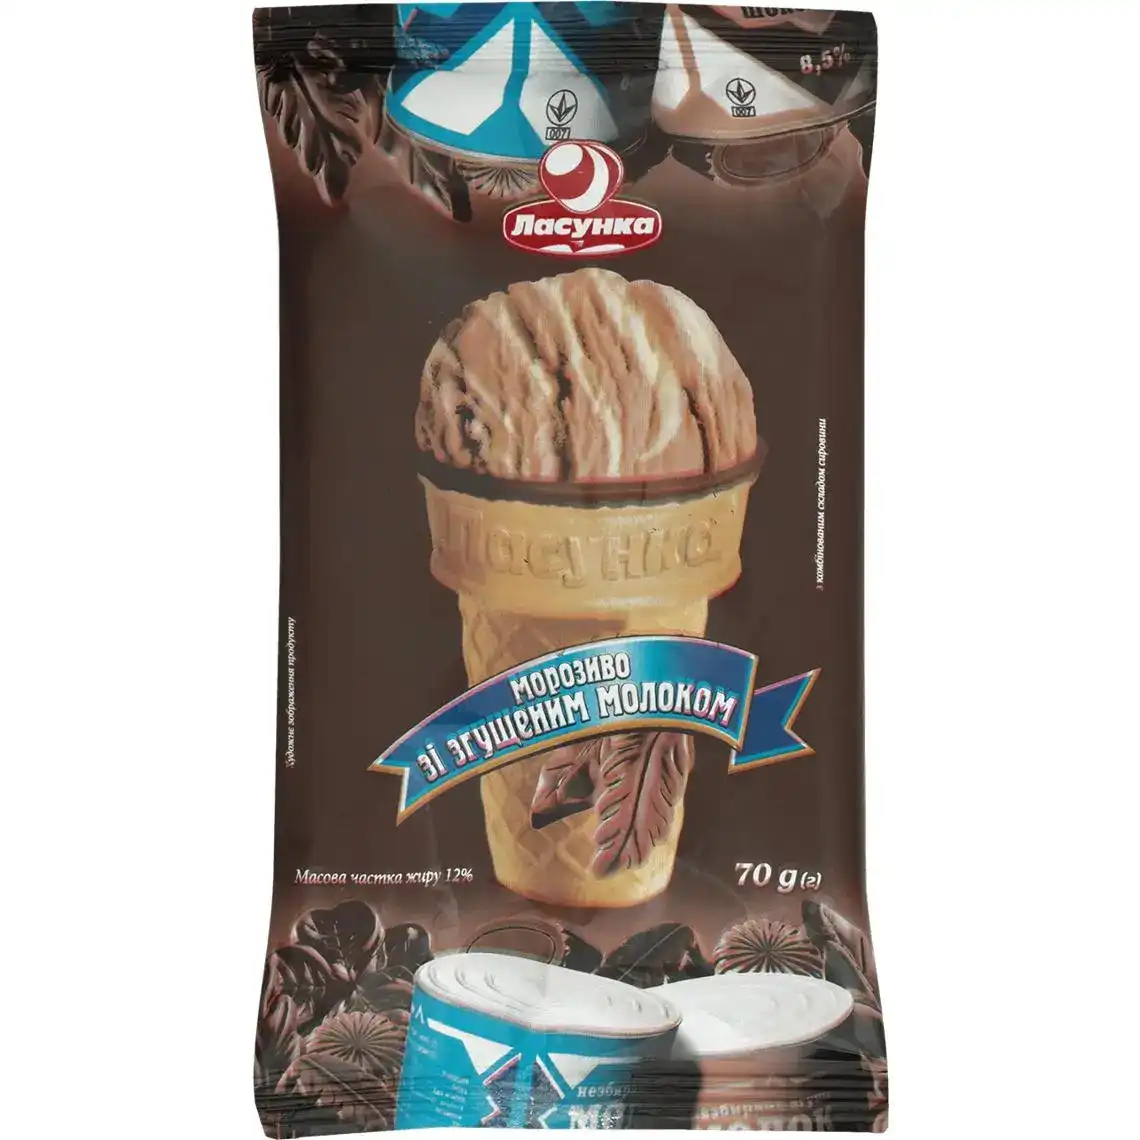 Мороженое Ласунка Пломбир какао со сгущенным молоком 70 г